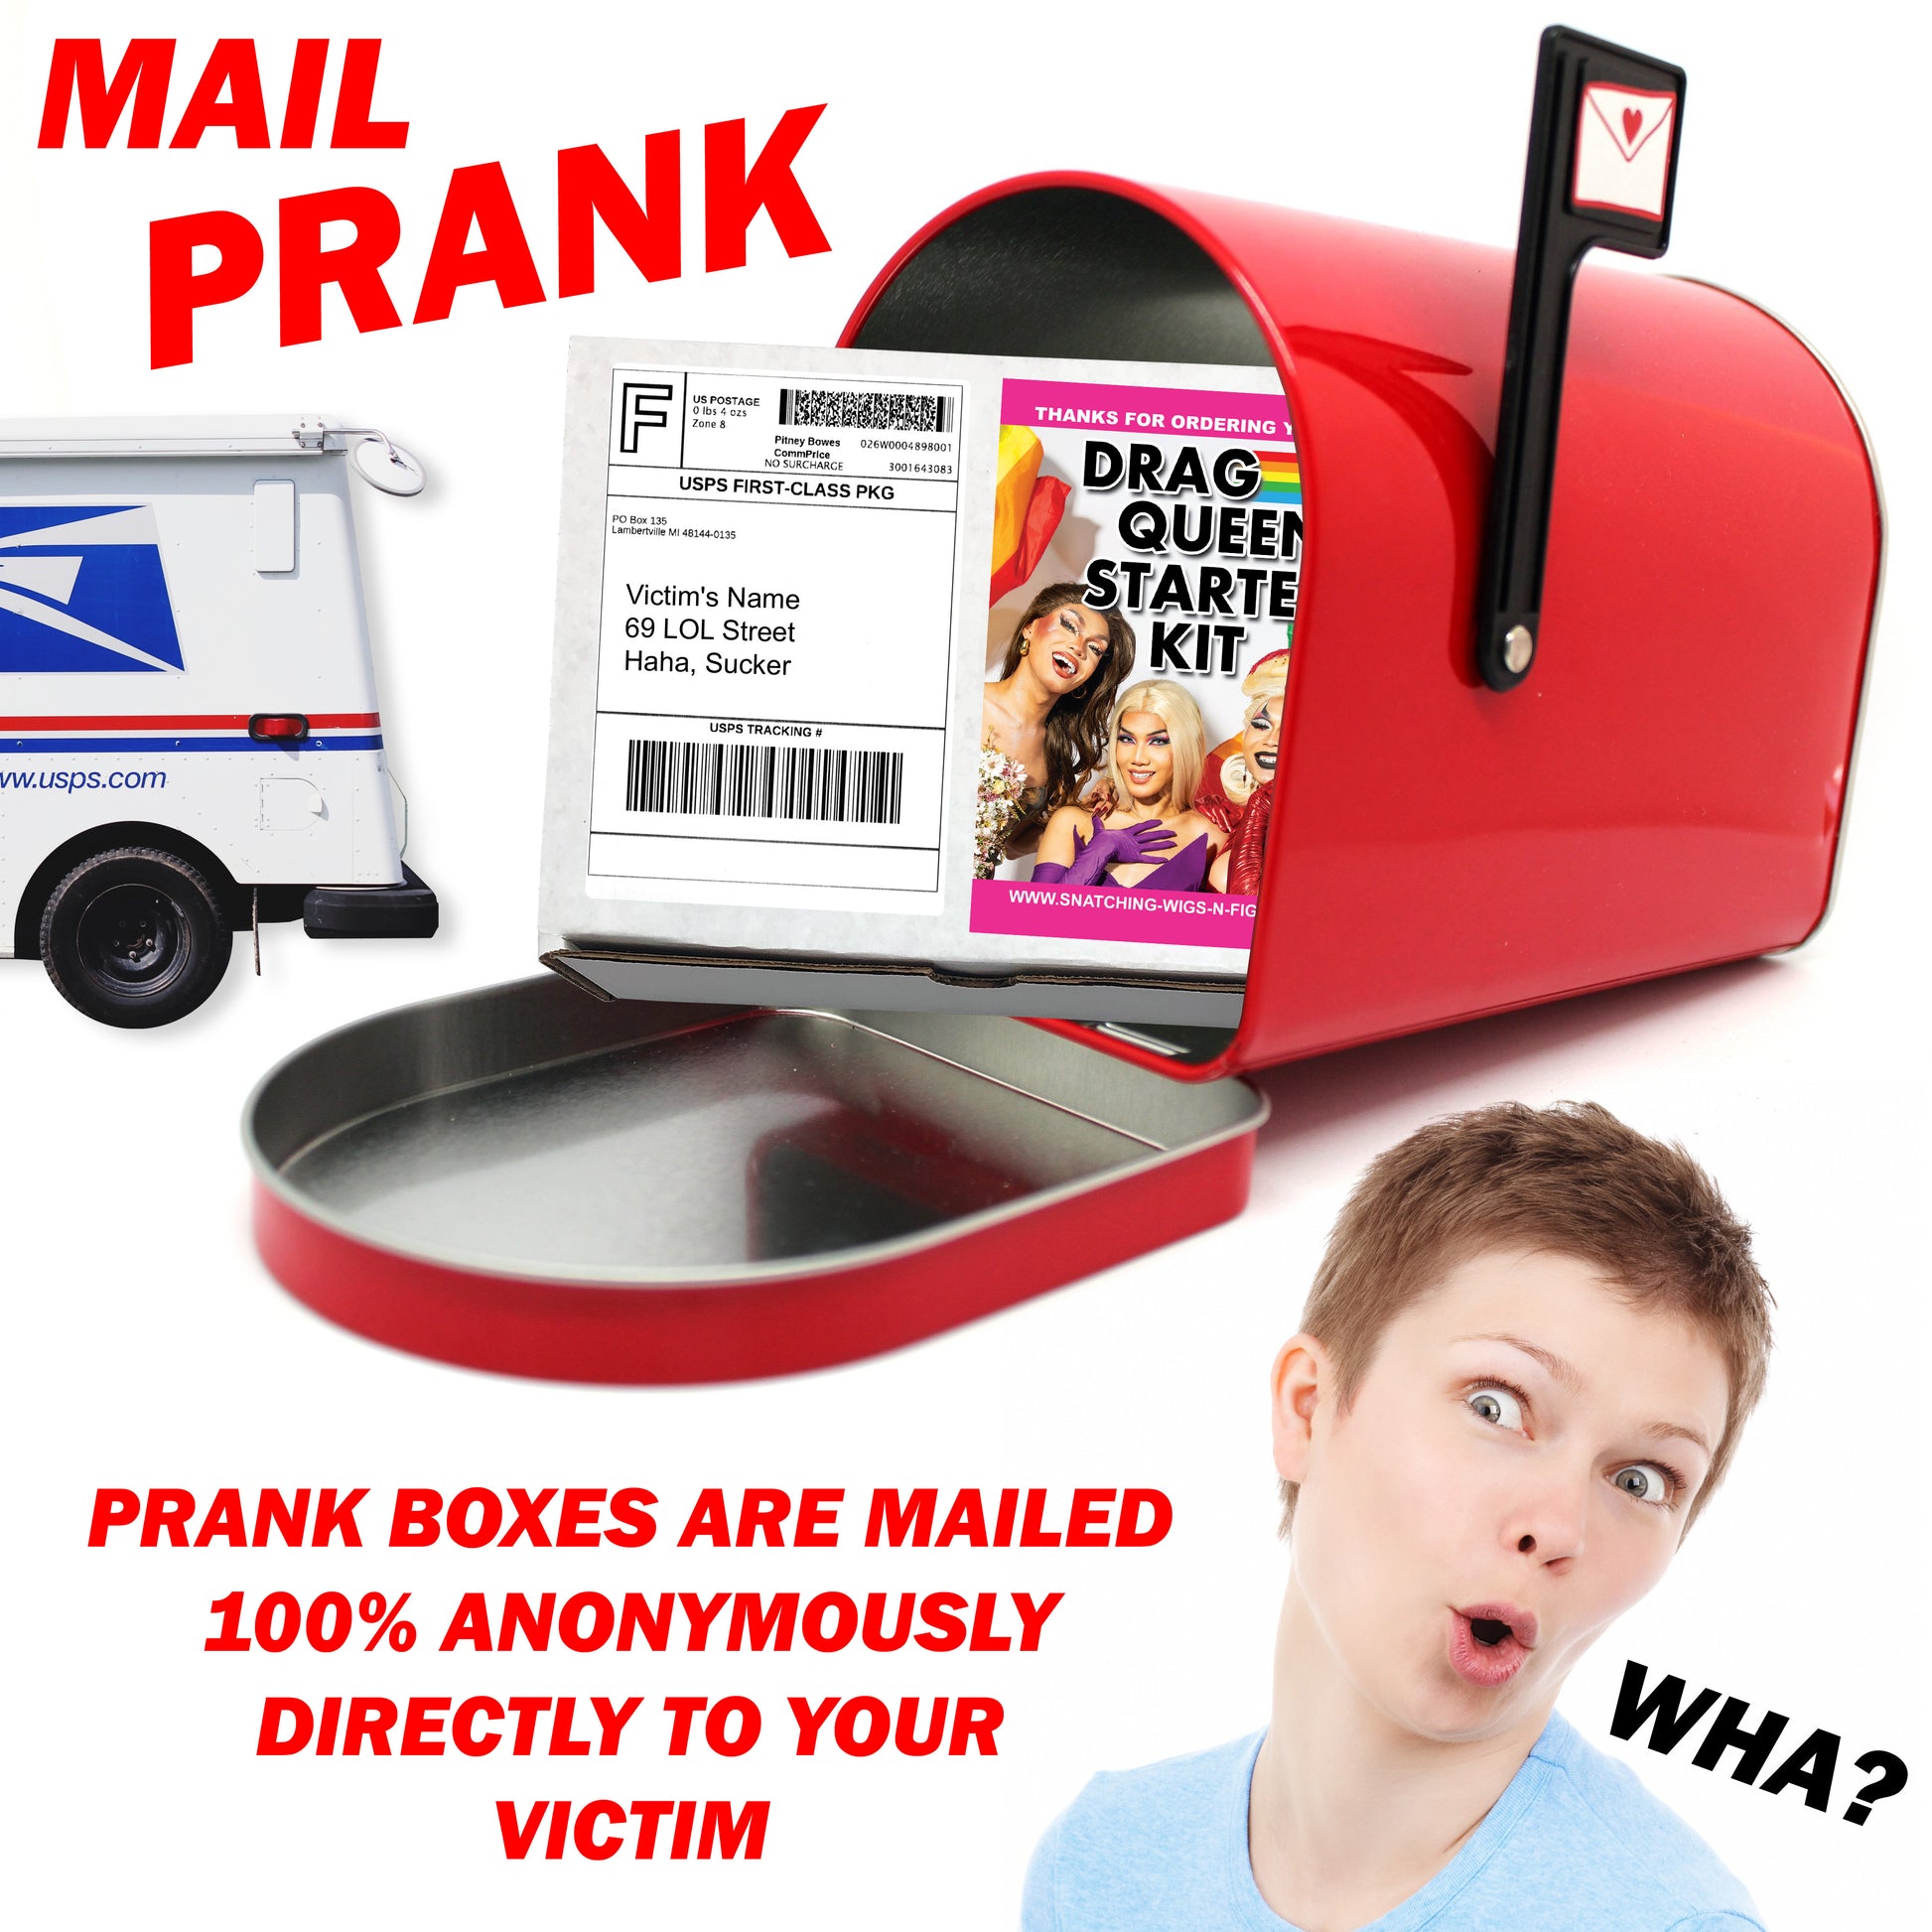 Drag Queen Starter Kit Prank Mail